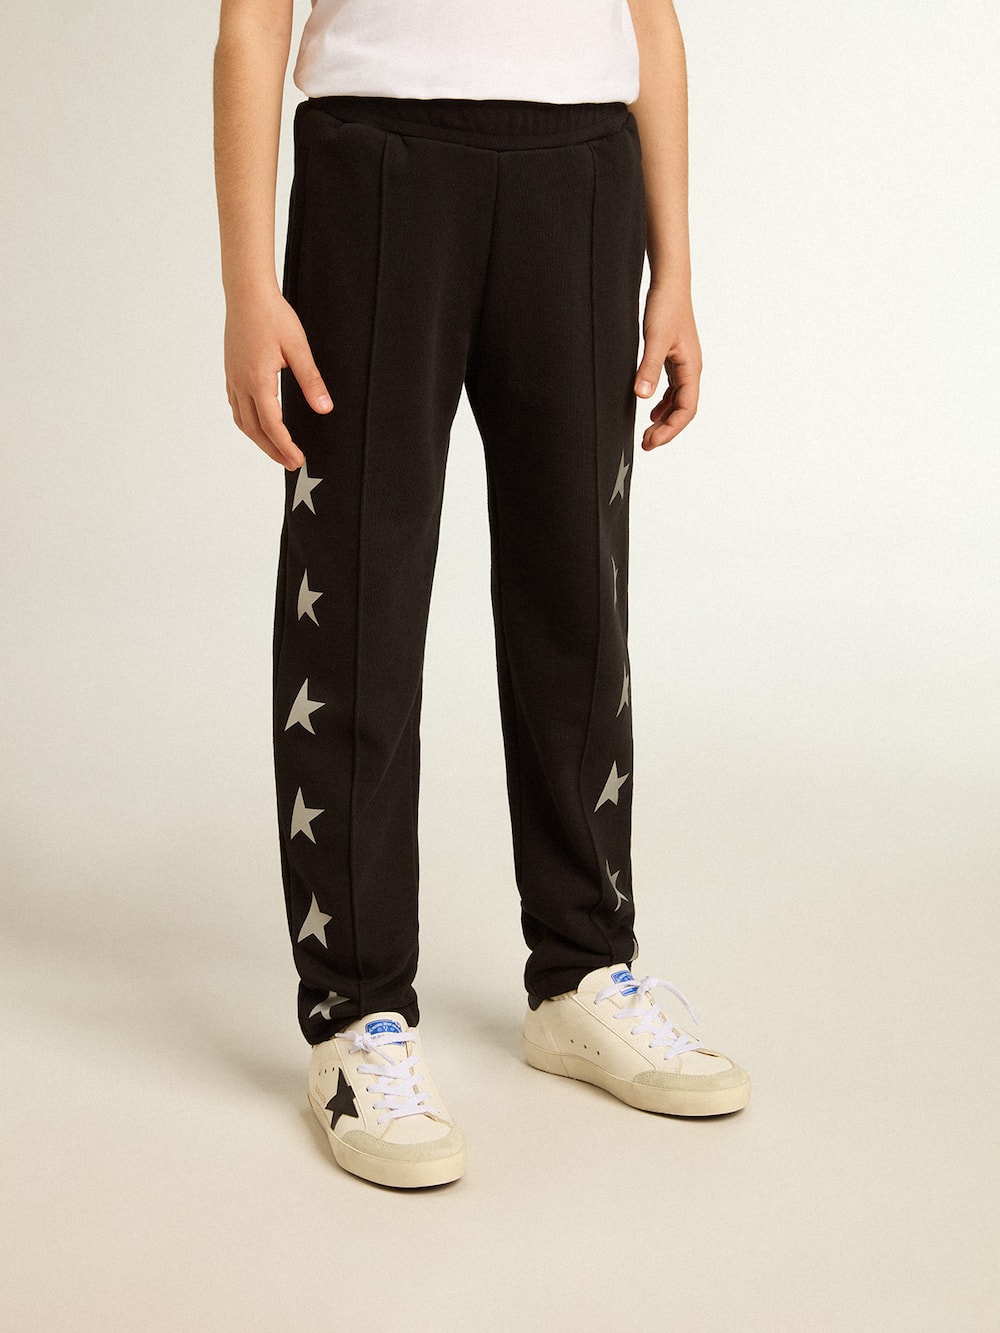 Golden Goose - Pantalon de jogging noir garçon avec étoiles blanches  in 